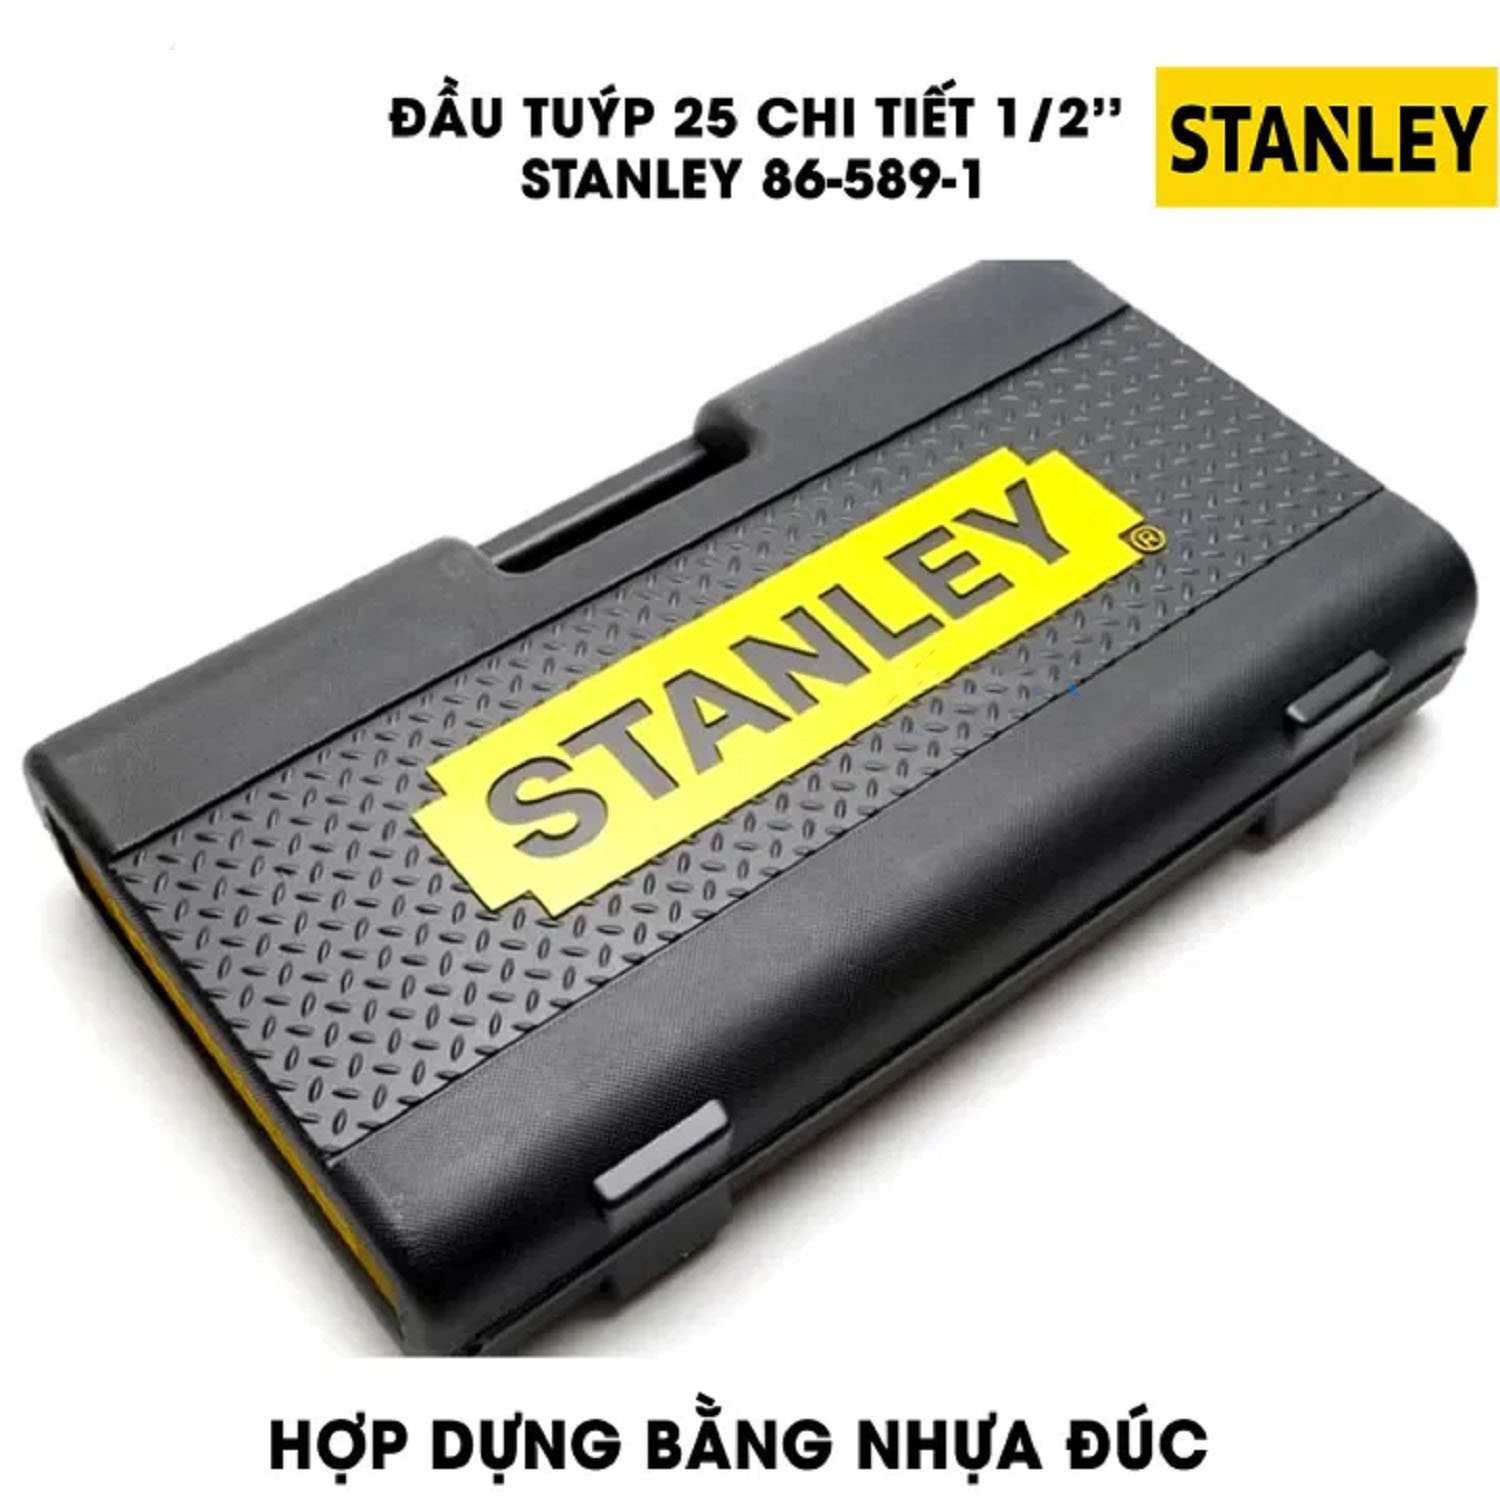 Hình ảnh 1 của mặt hàng Đầu tuýp bộ khẩu Stanley 86-589-1